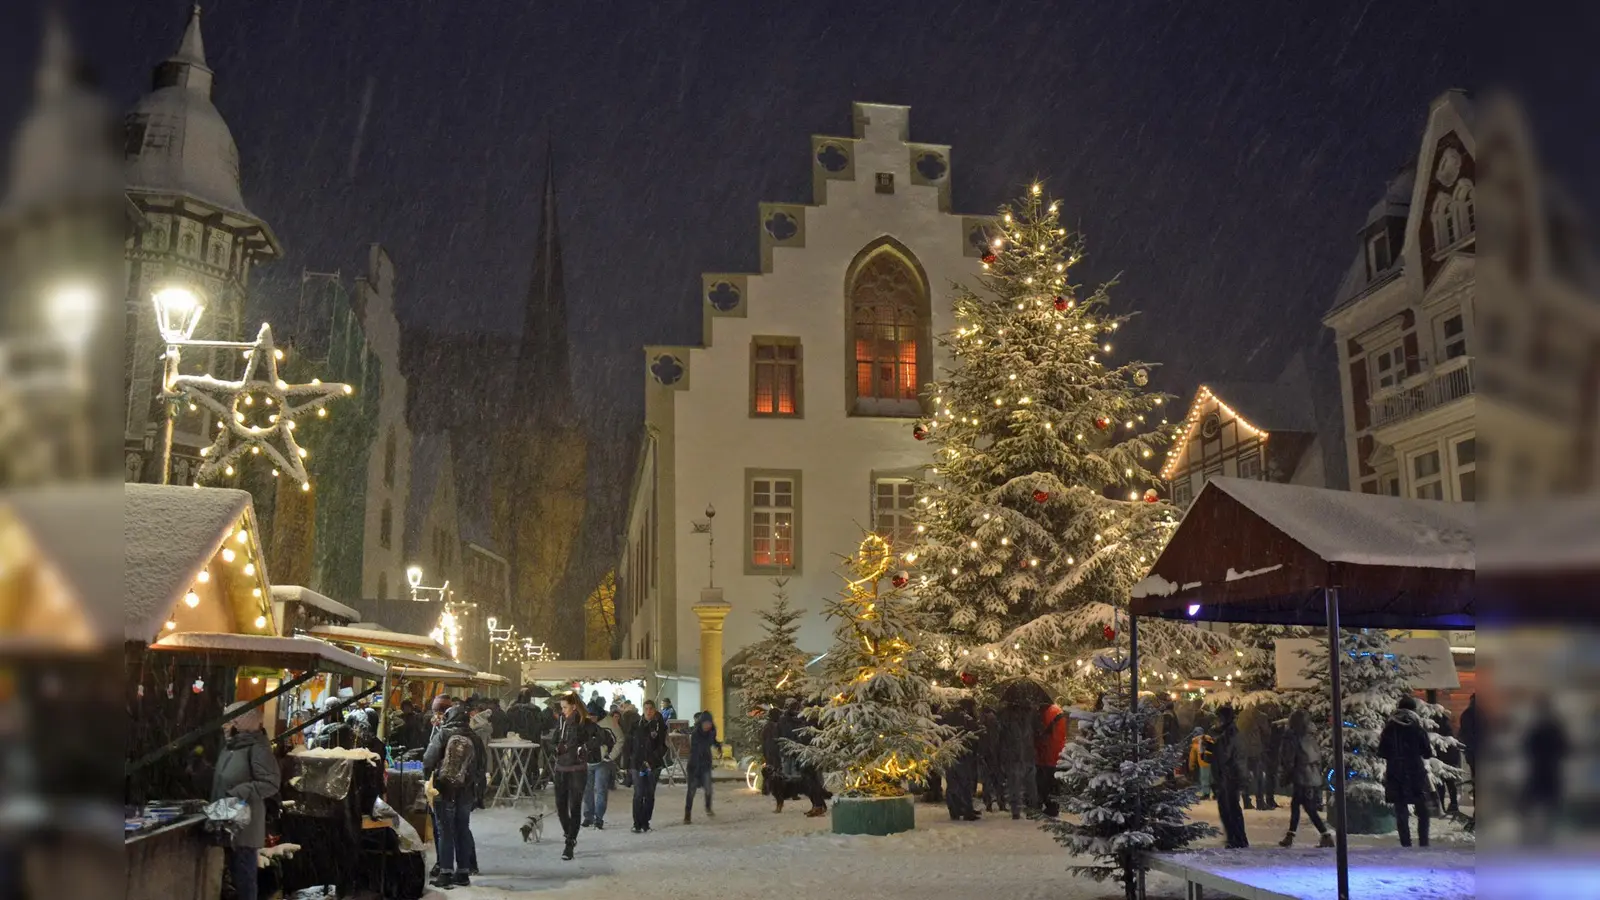 Hell erleuchtet und im Schneegestöber: So fanden Besucher den Nikolausmarkt in den letzten Jahren vor. Spannend wird es, welche Impressionen sich diesmal einfangen lassen werden. (Foto: Stadt Brakel)